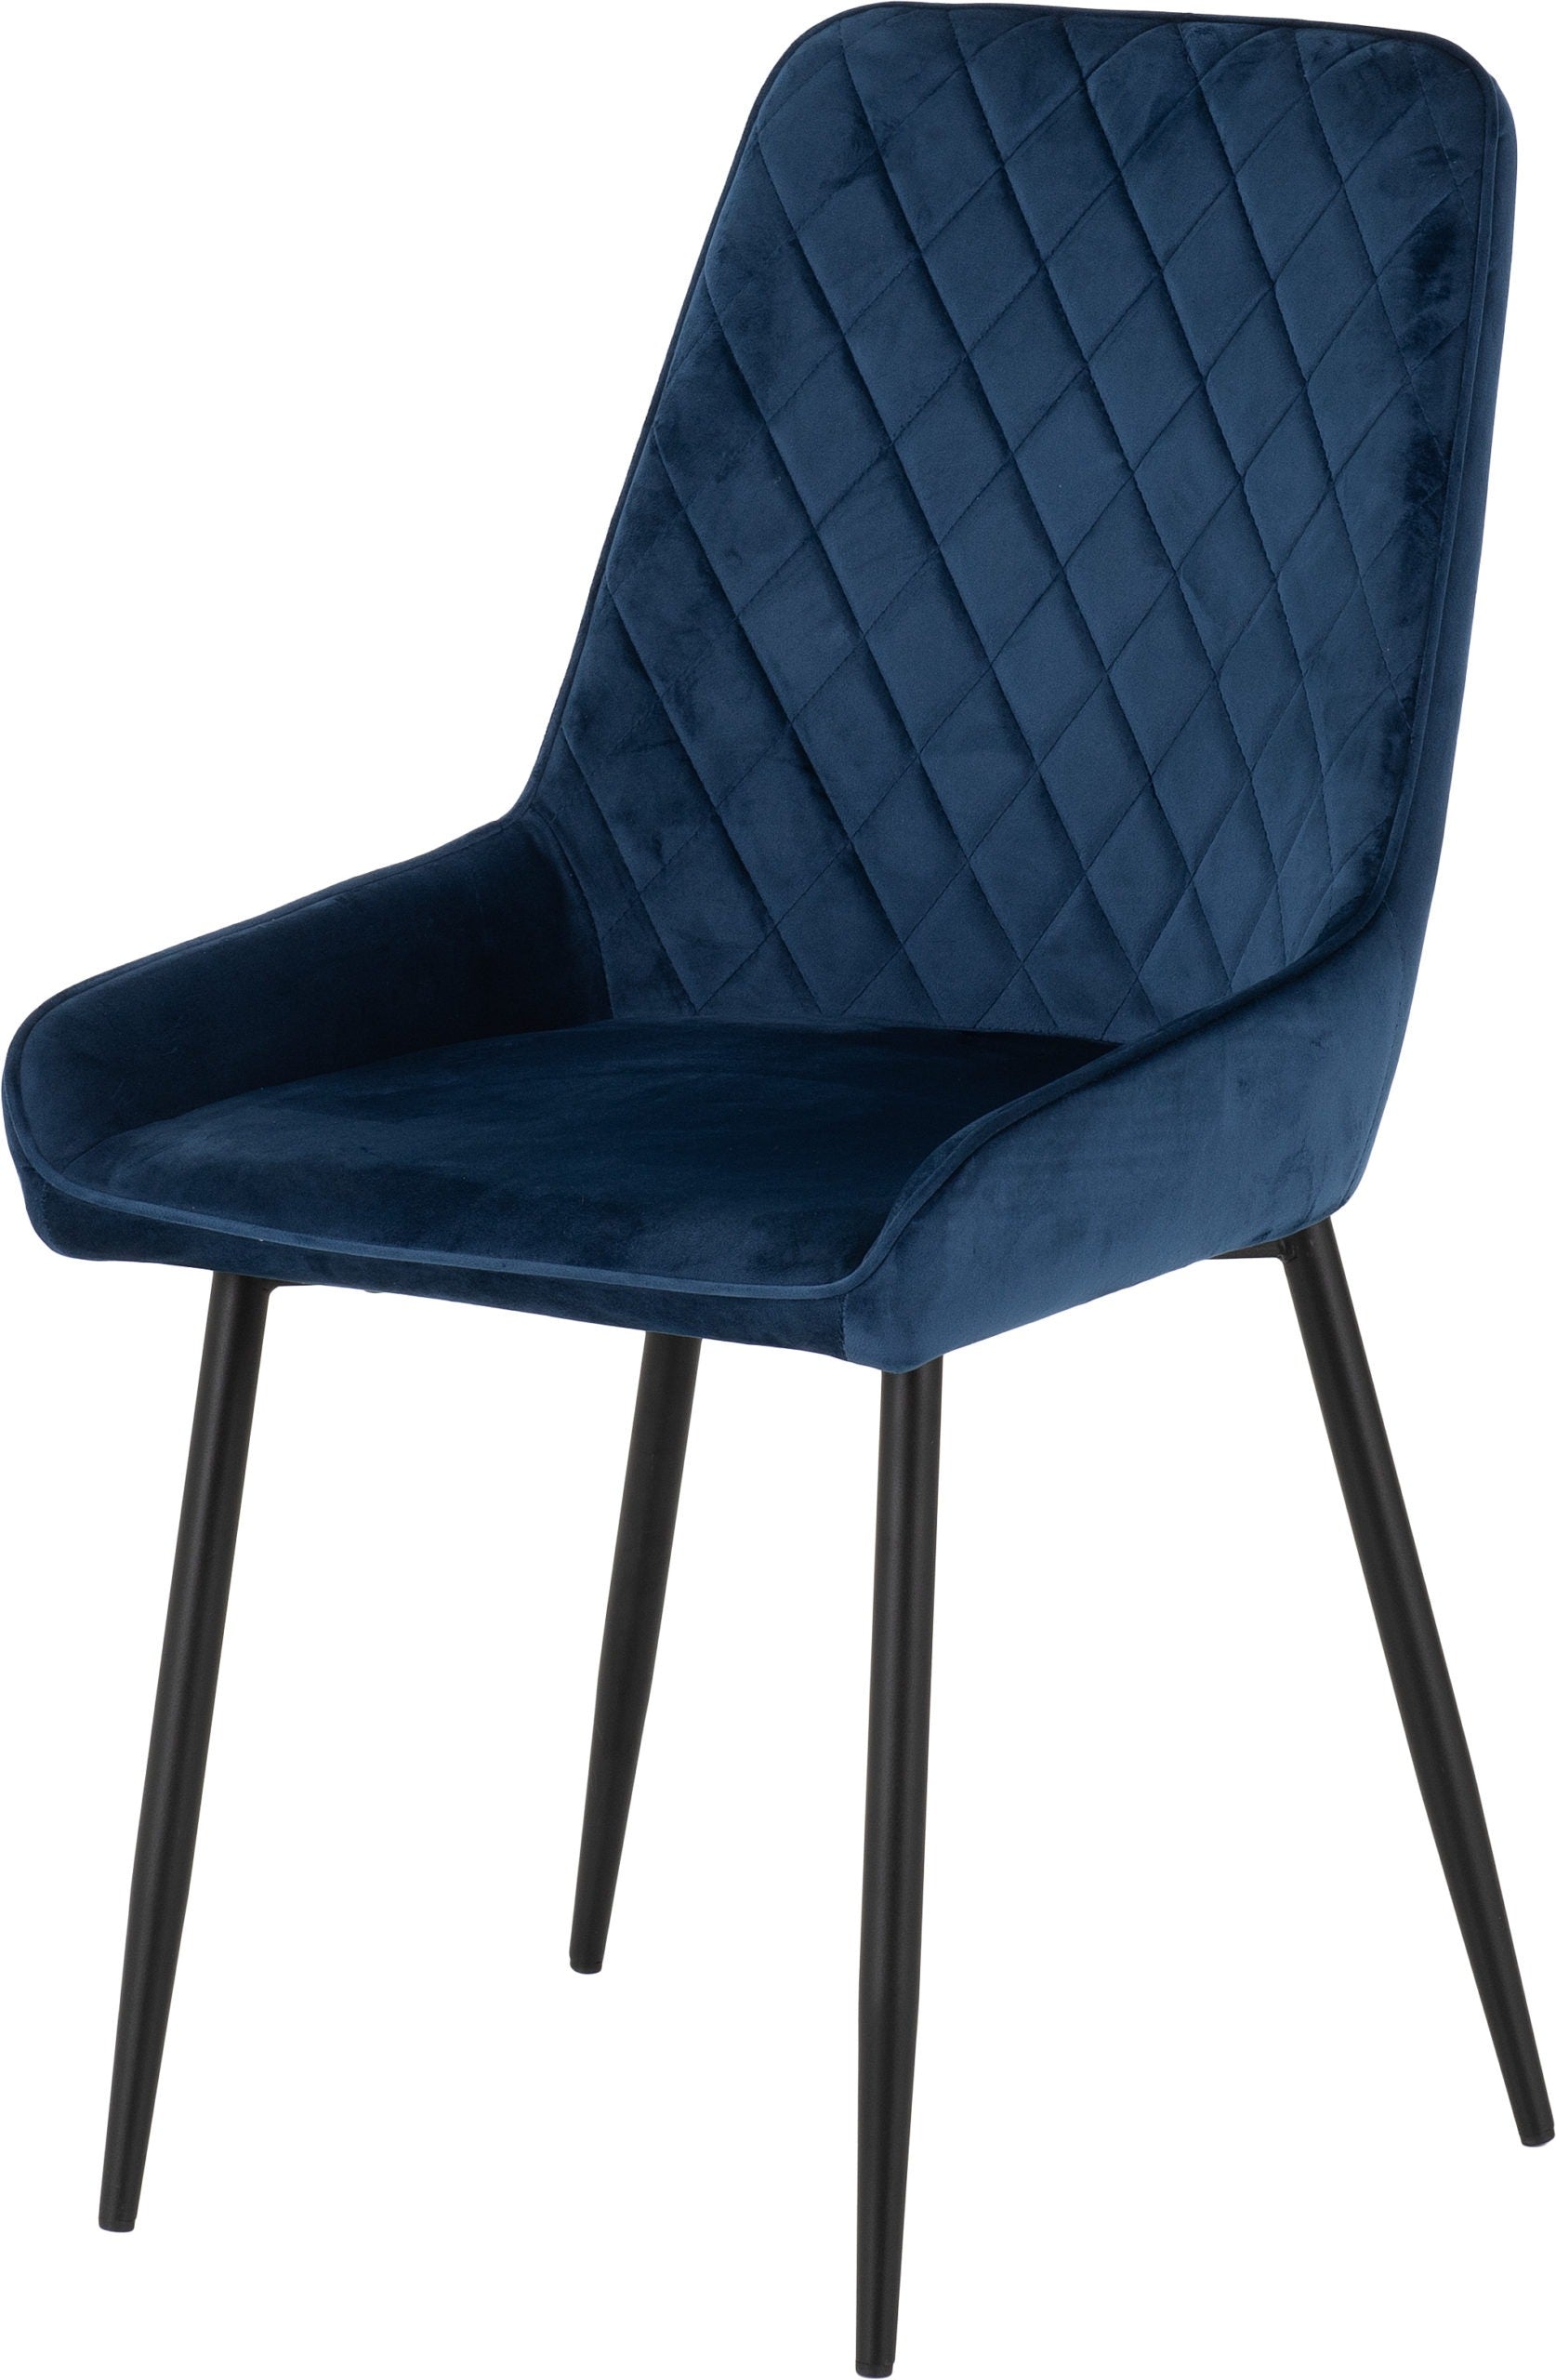 Avery Chair Sapphire Blue Velvet - The Right Buy Store